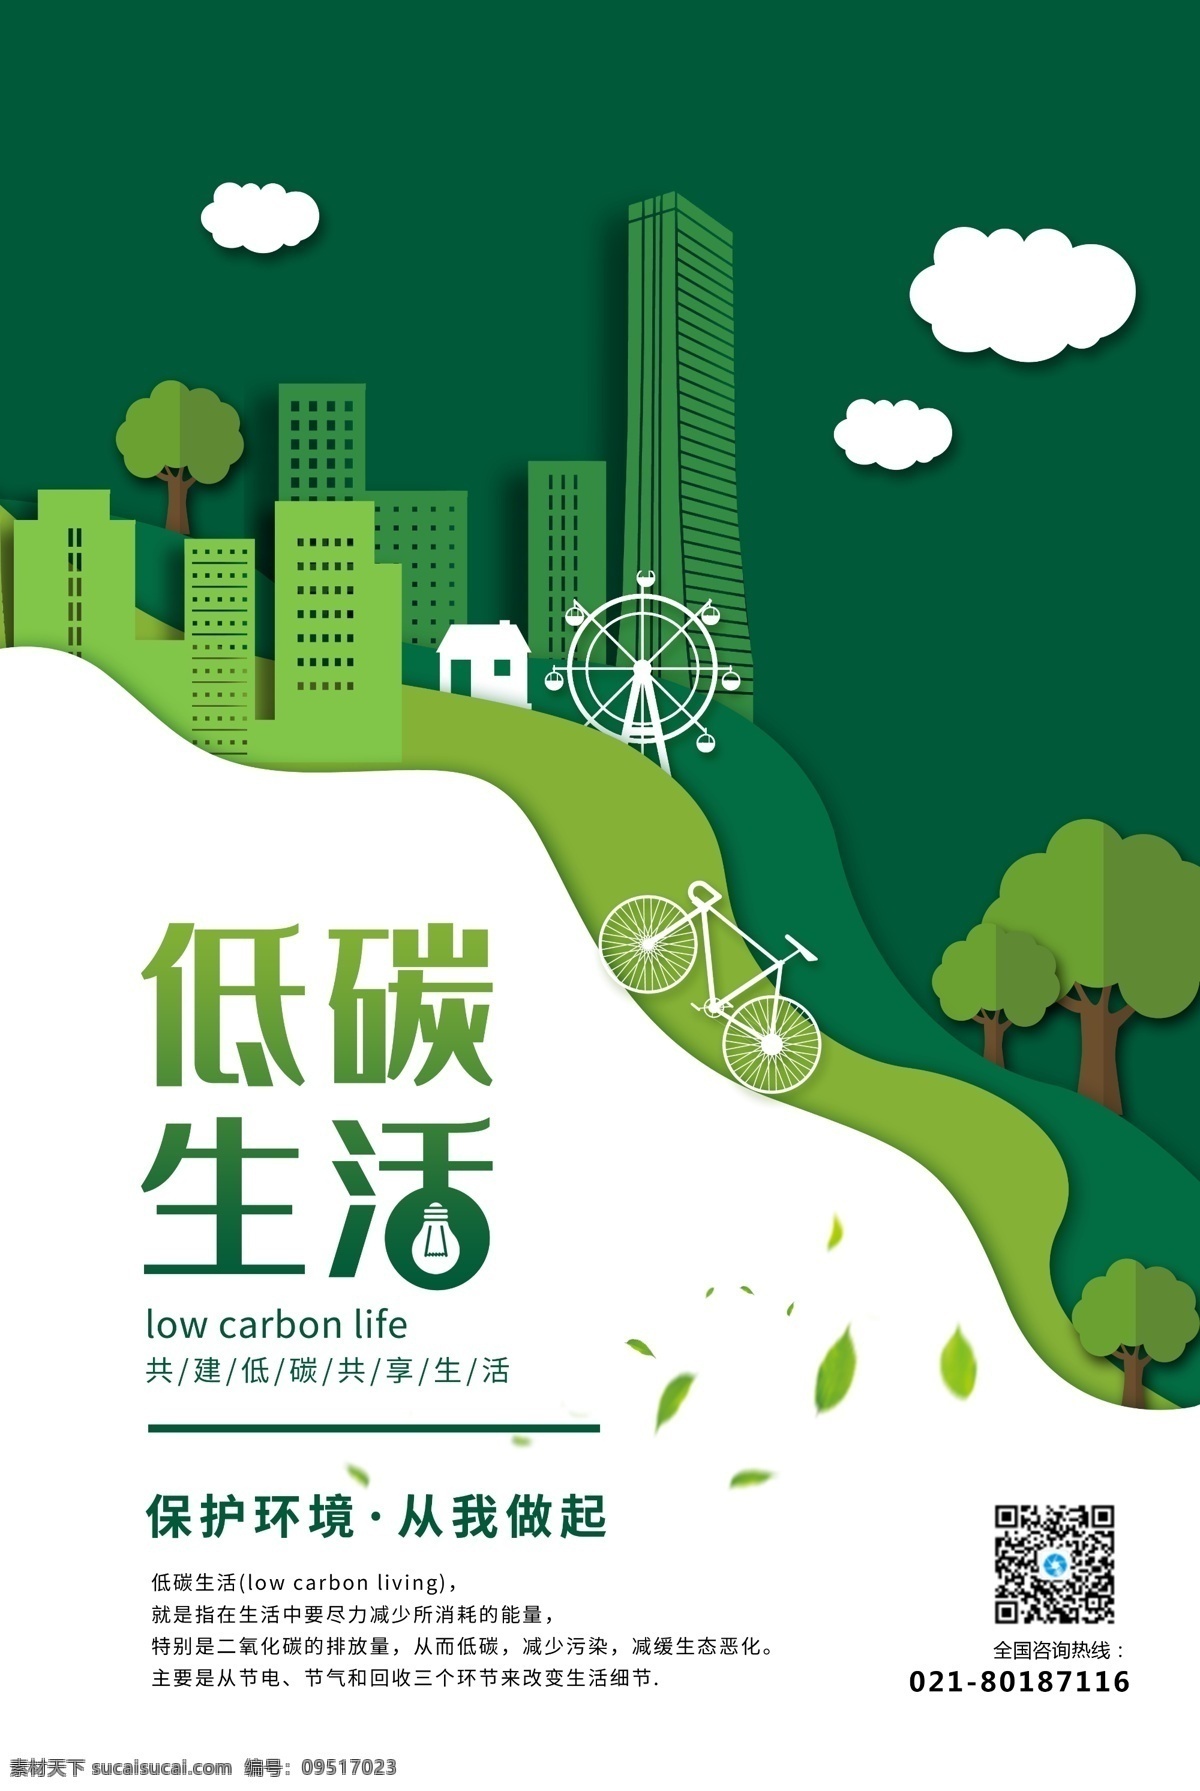 剪纸 风 低 碳 生活 公益 宣传海报 低碳生活 绿色出行 环保 绿色环保 城市 爱护环境 保护环境 保护地球 绿色家园 低碳环保 绿色健康 节能环保 文明城市